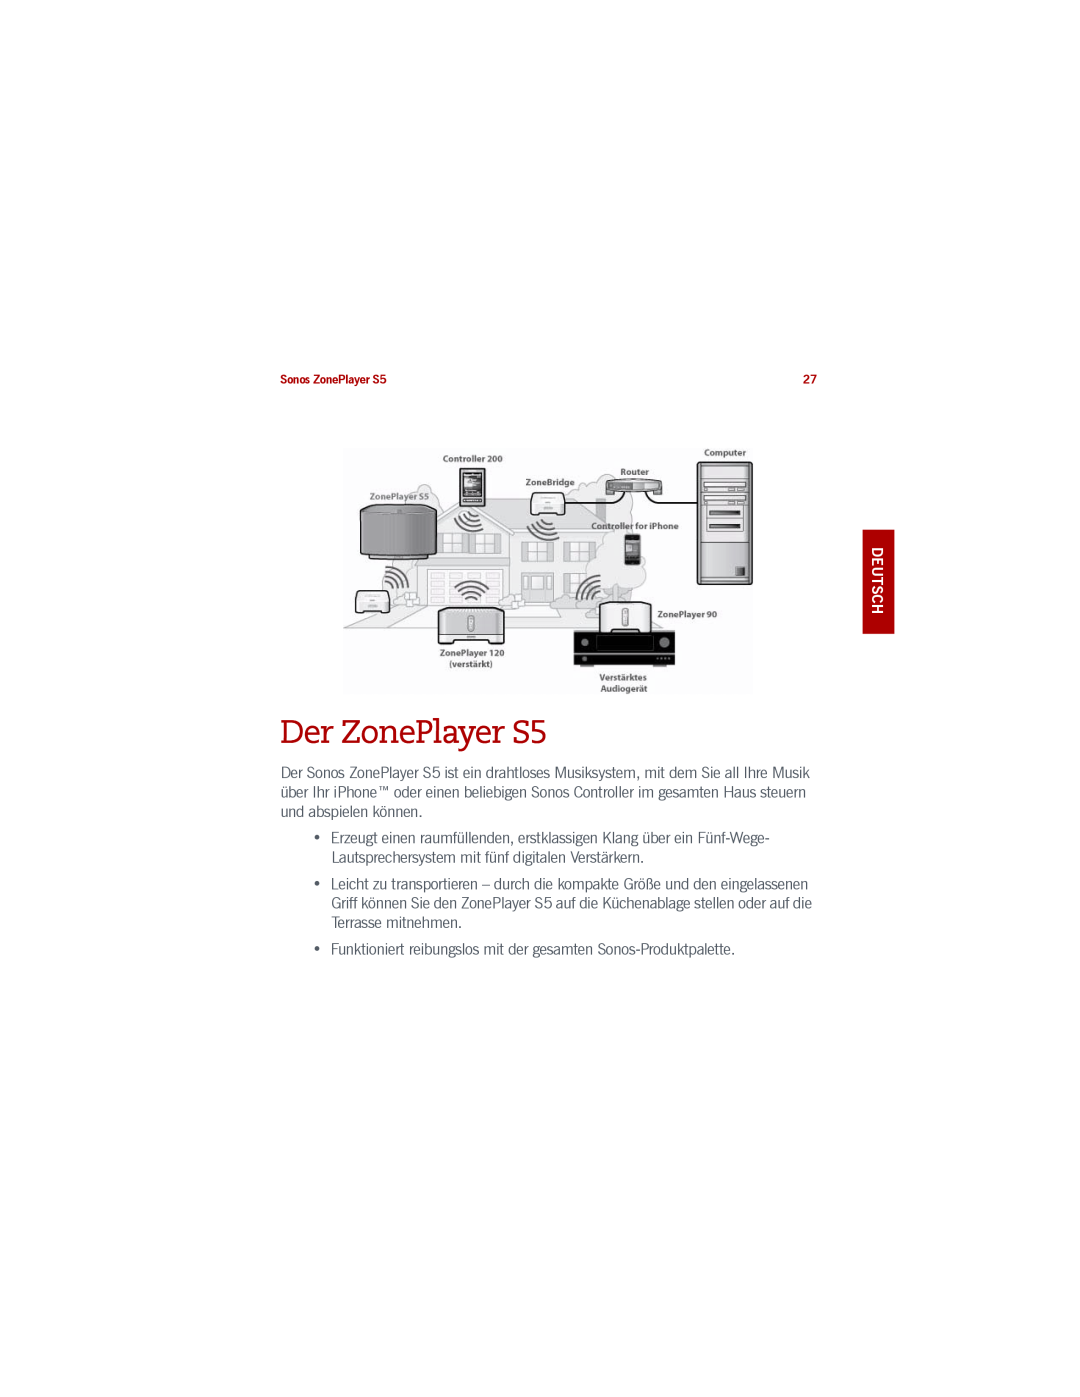 Sonos manual Der ZonePlayer S5, Deutsch Deutsch Nederlands Svenska 